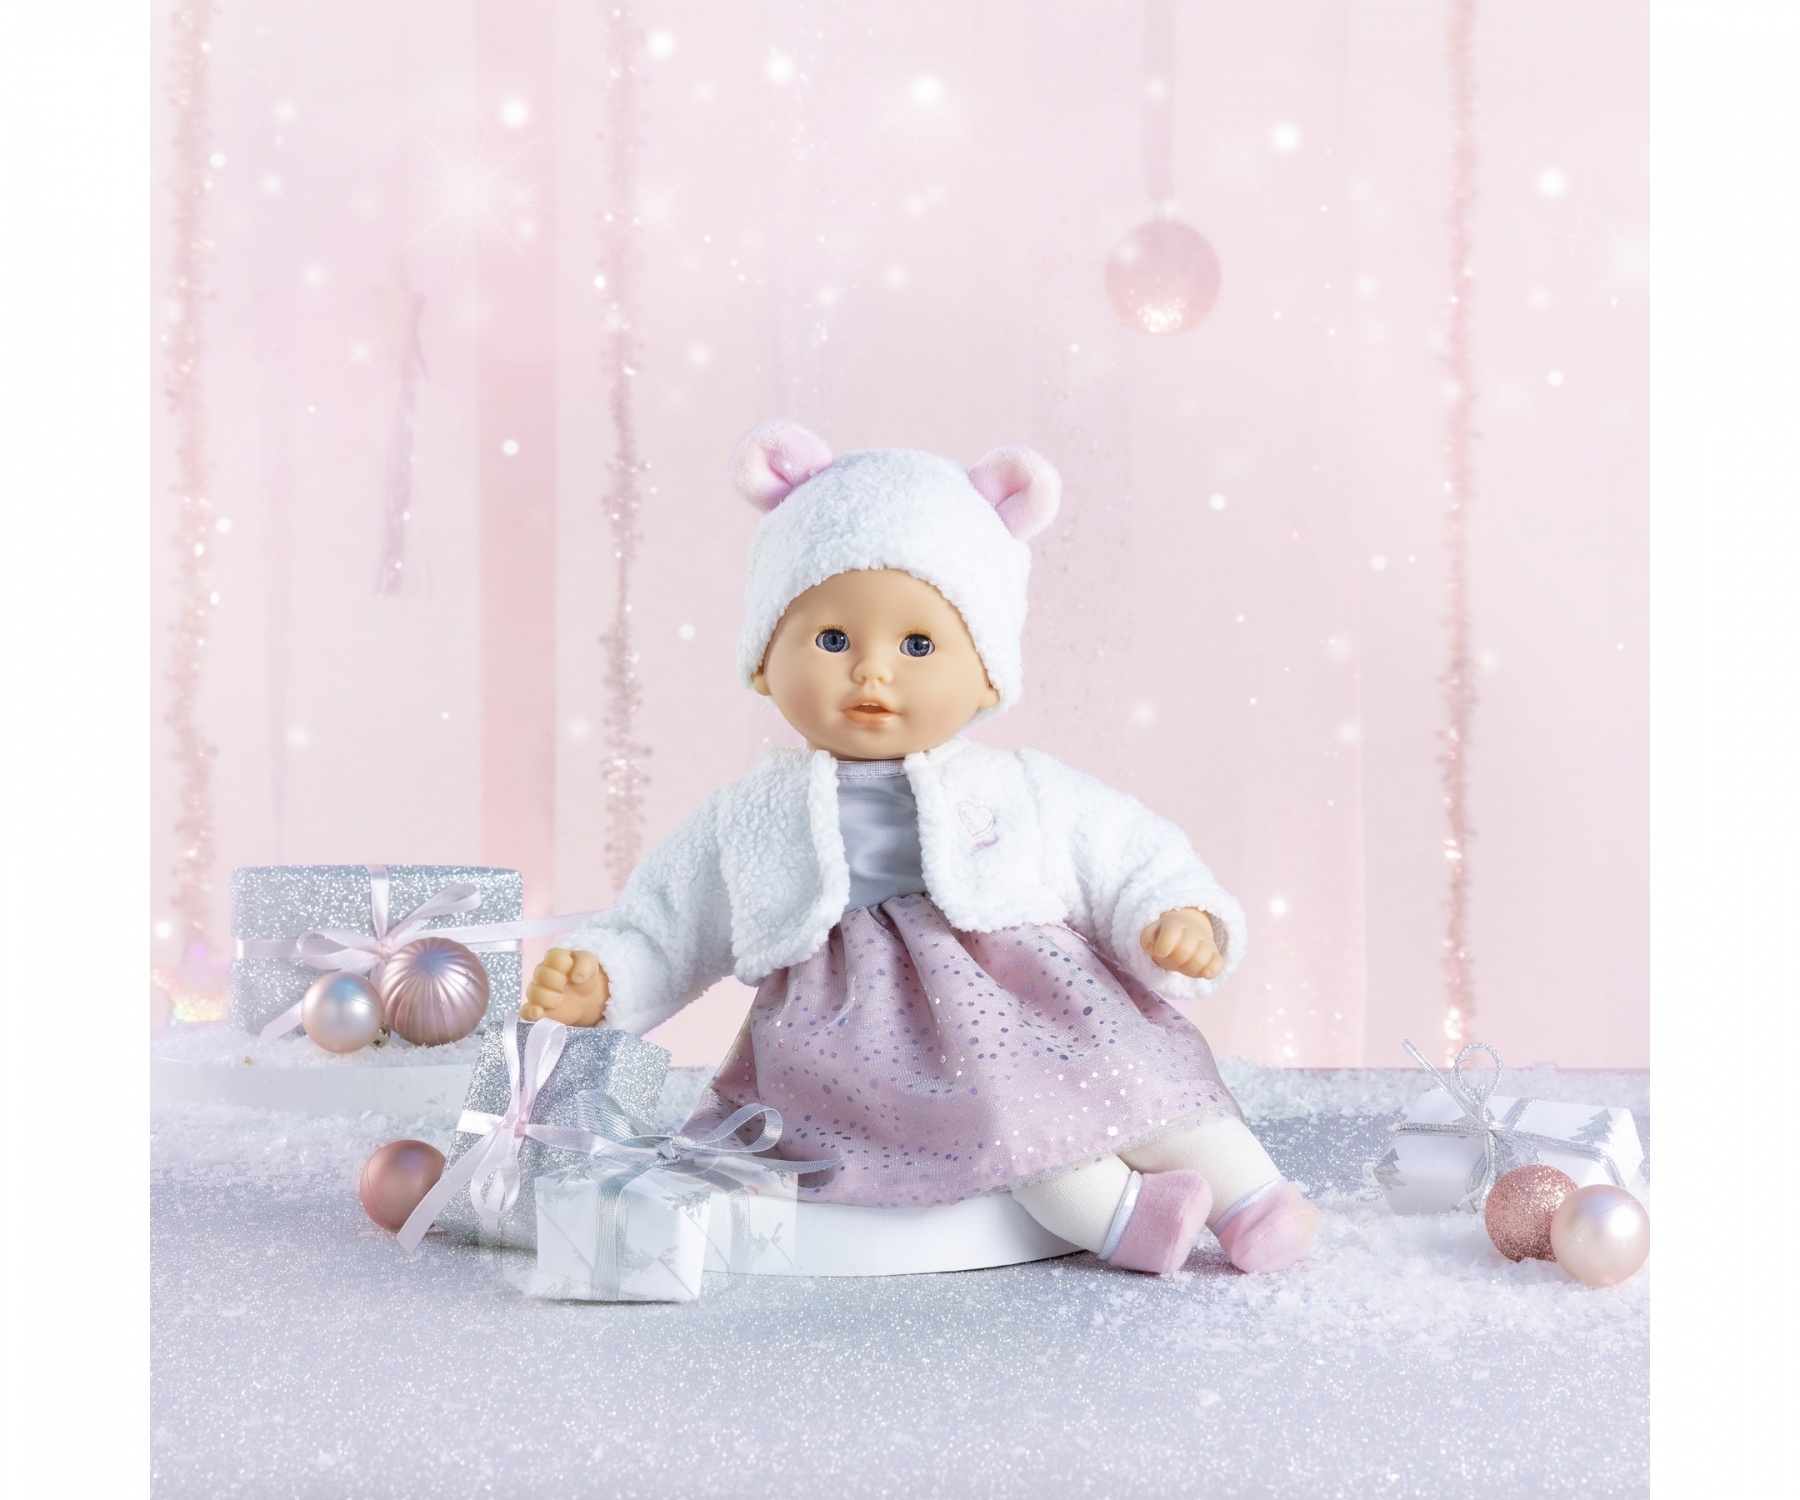  Corolle Mon Premier Poupon Bebe Bath Alyzee Baby Doll,Pink,12  inch : Toys & Games